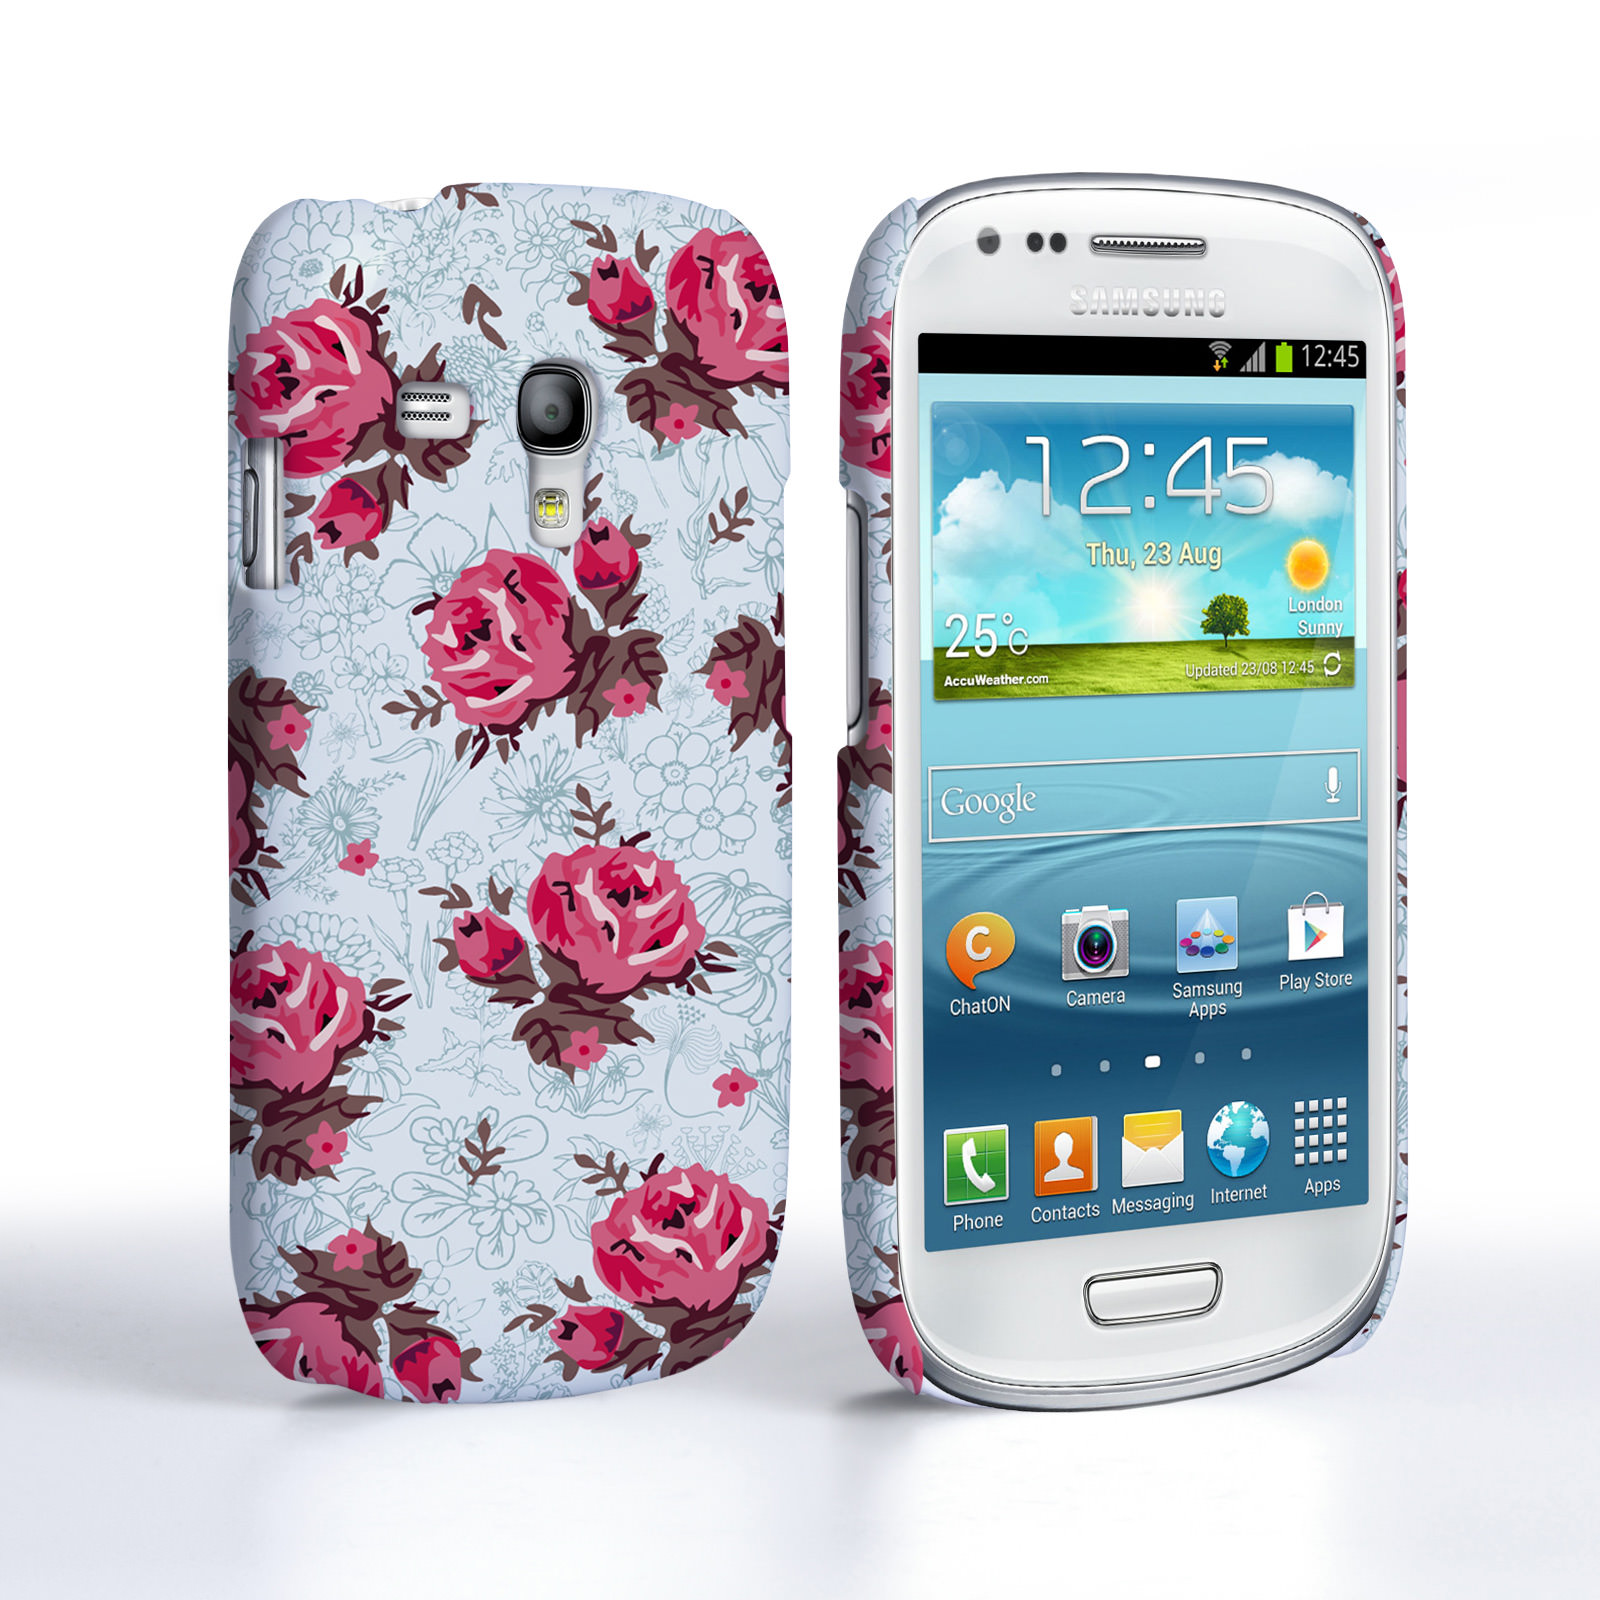 삼성 갤럭시 s3 미니 벽지,휴대폰 케이스,휴대 전화,간단한 기계 장치,통신 장치,휴대폰 액세서리